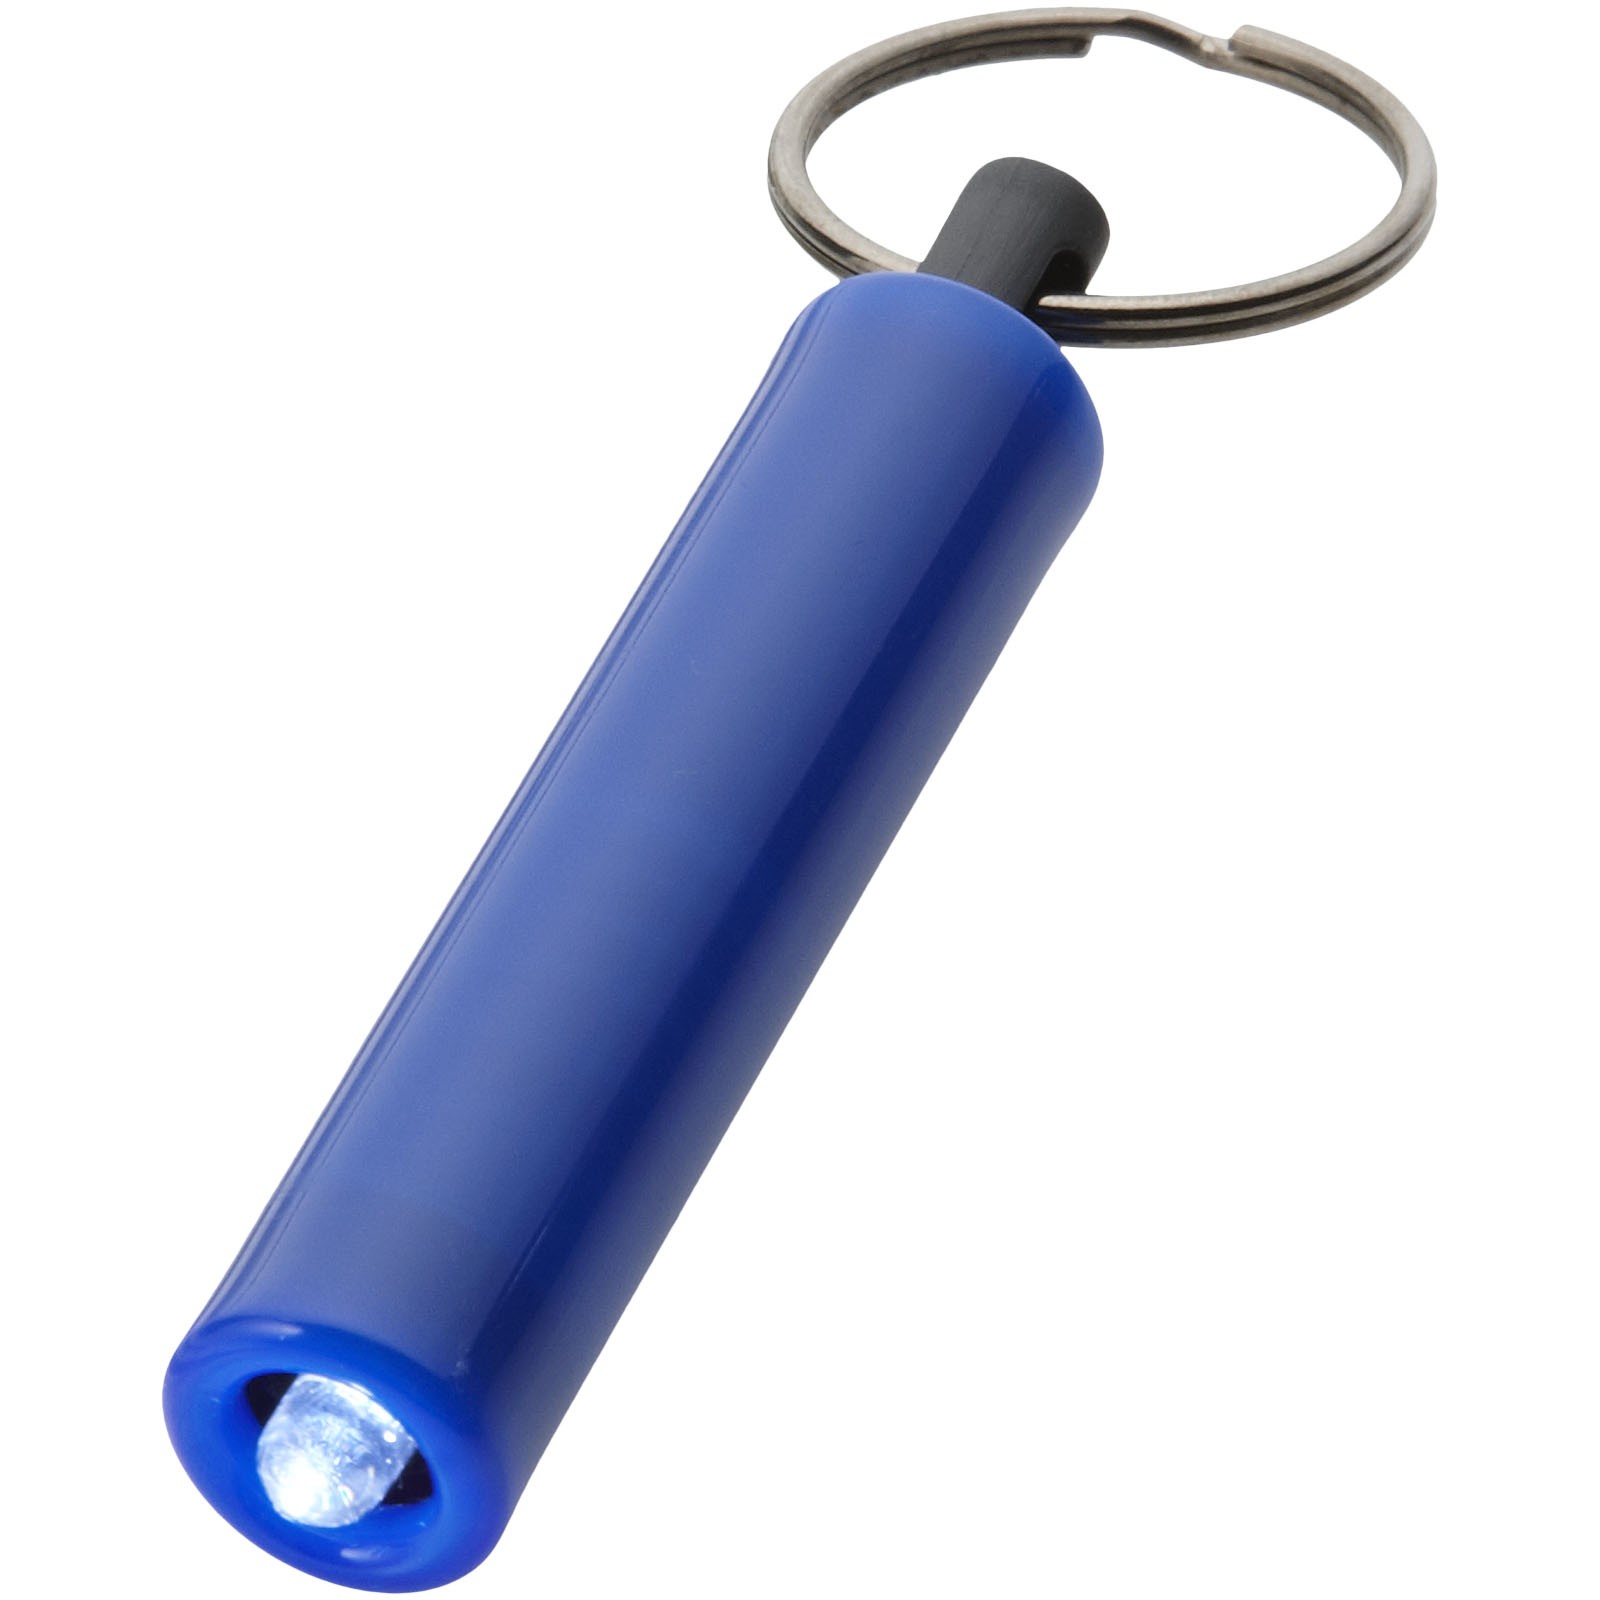 Retro LED keychain light - Royal Blue